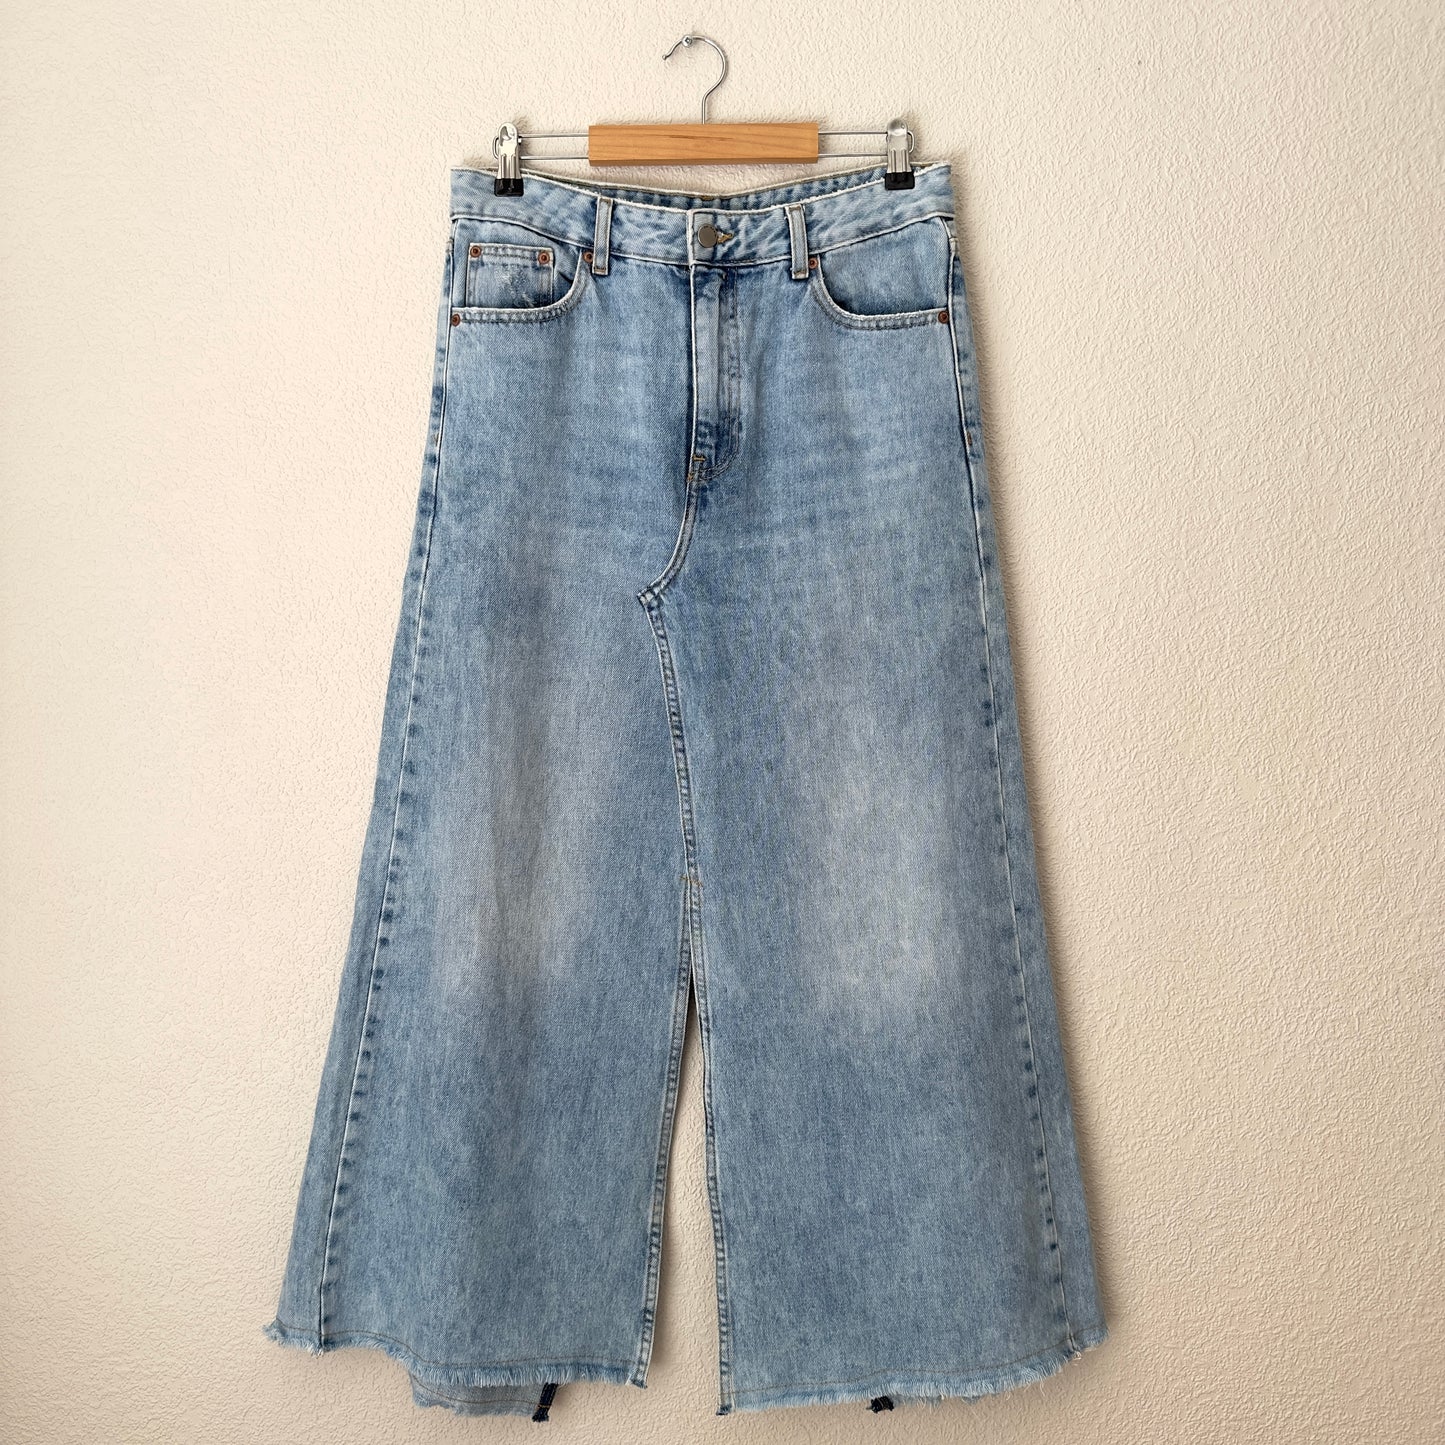 Upcycled Denim Maxi Skirt 11 - Acid Wash/Frayed - Size M